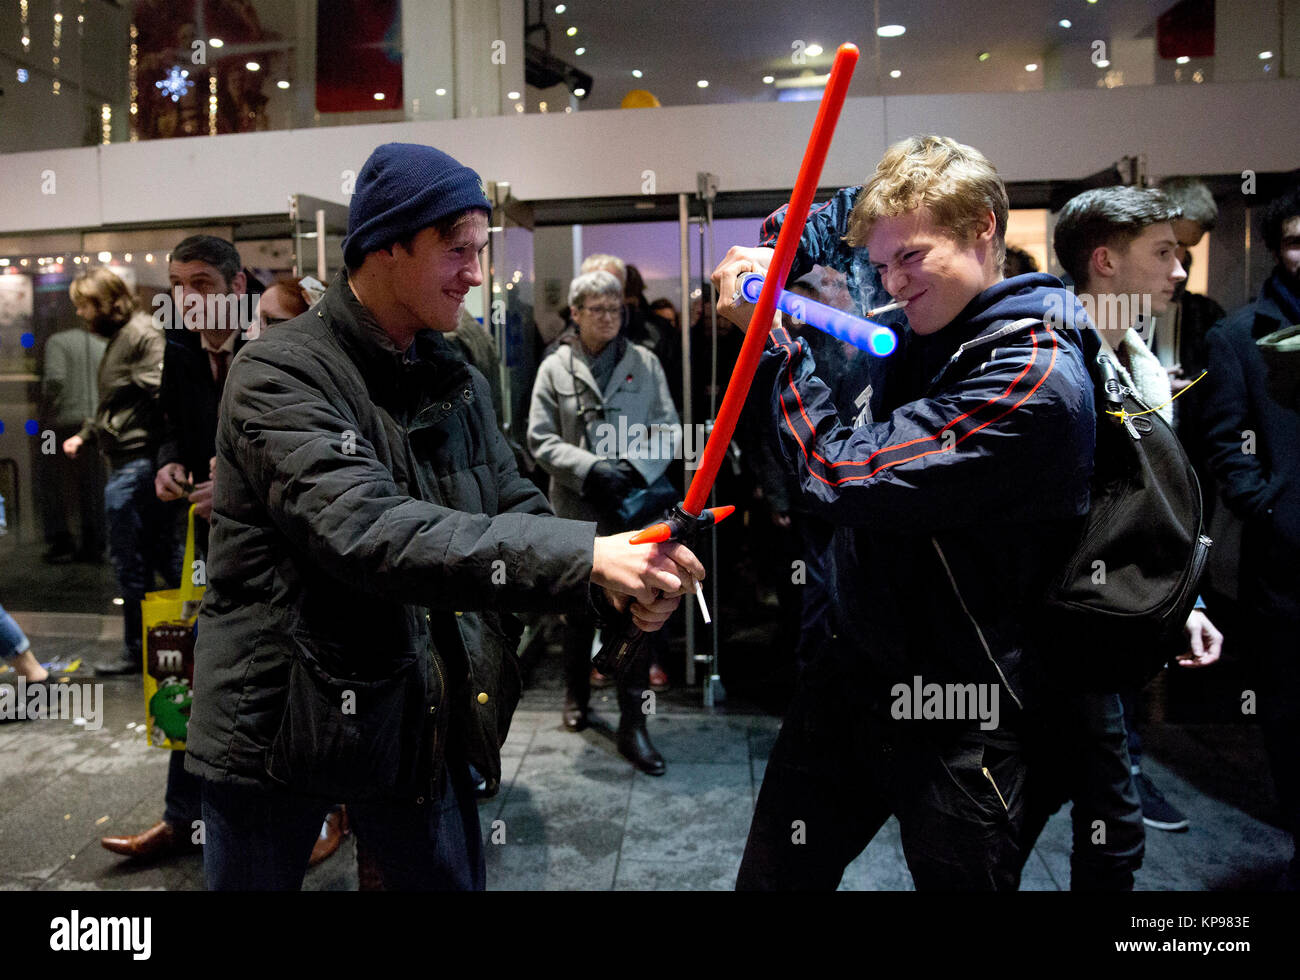 Zwei Fans kämpfen mit ihren Lichtschwertern, wie sie ein Screening von Star Wars: Der letzte Jedi am Leicester Square in London. Stockfoto